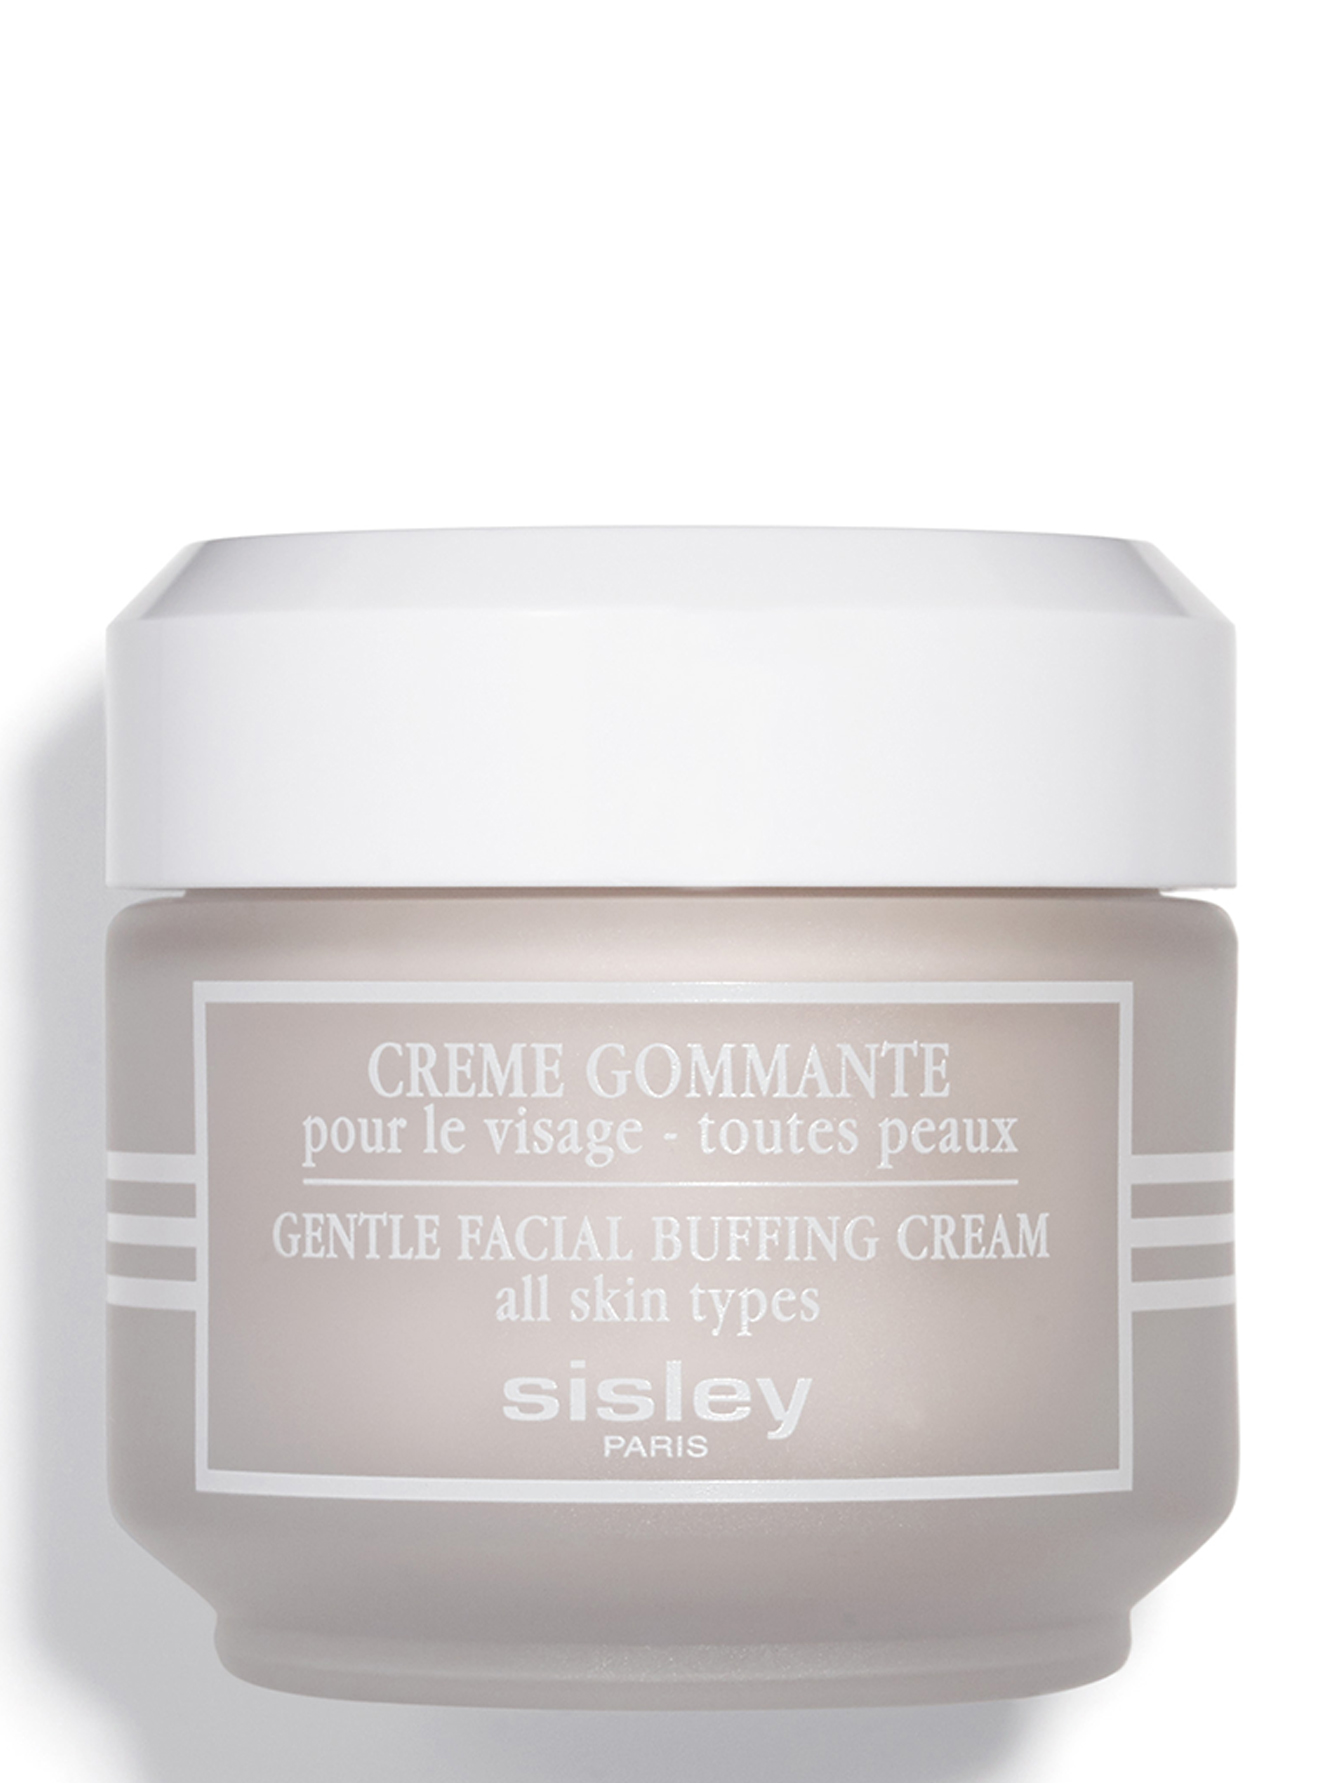 Крем гуммирующий - Gentle facial buffing cream, 50ml - Общий вид